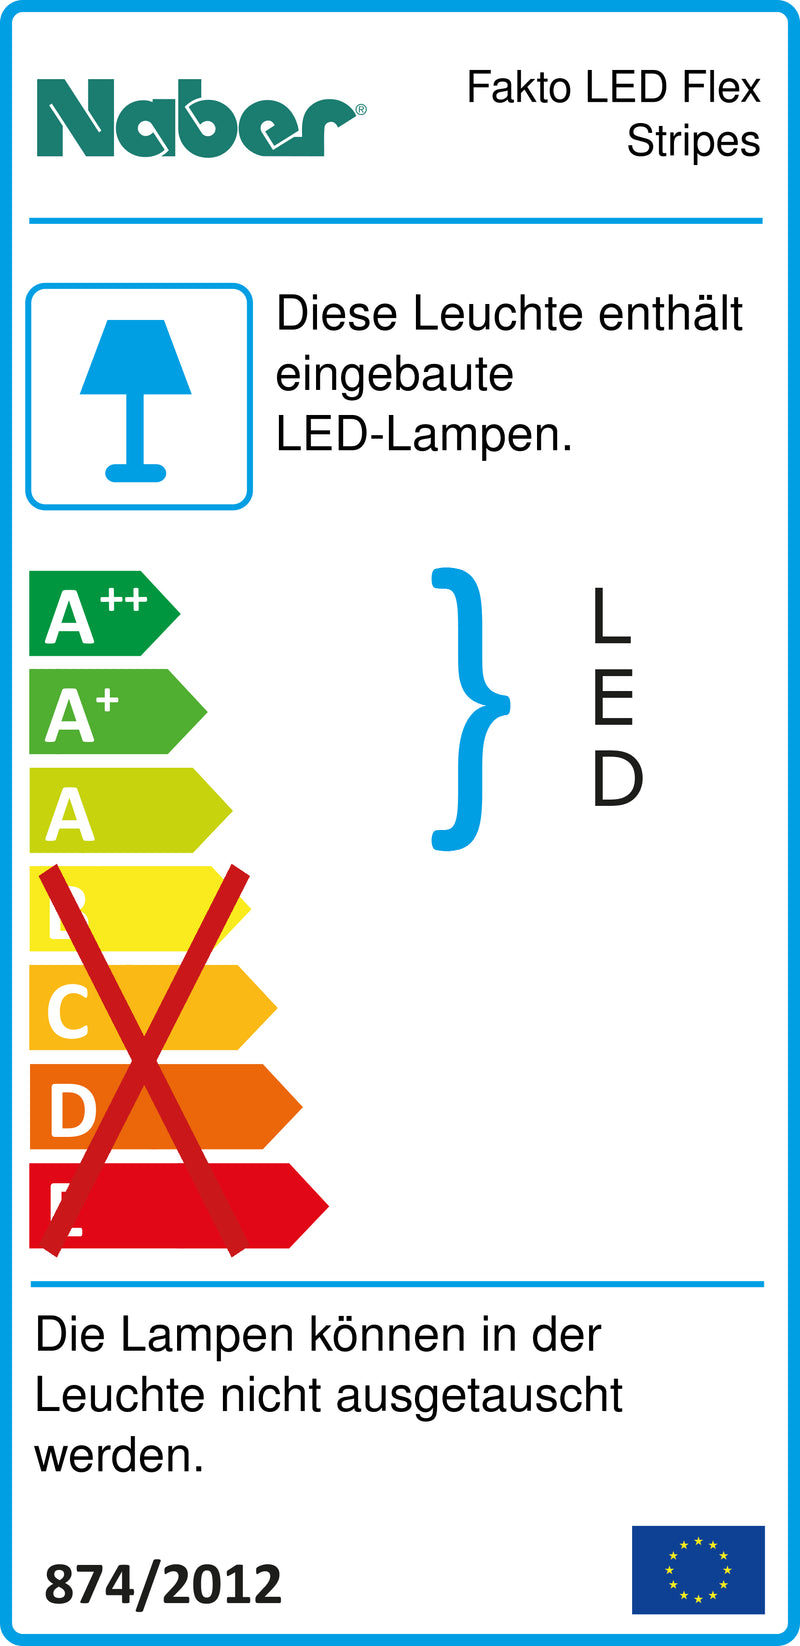 E-Label zu Zeichnung zu Fakto LED Flex Stripes als Variante L 300 mm, 1,5 W von Naber GmbH in der Kategorie Lichttechnik in Österreich auf conceptshop.at